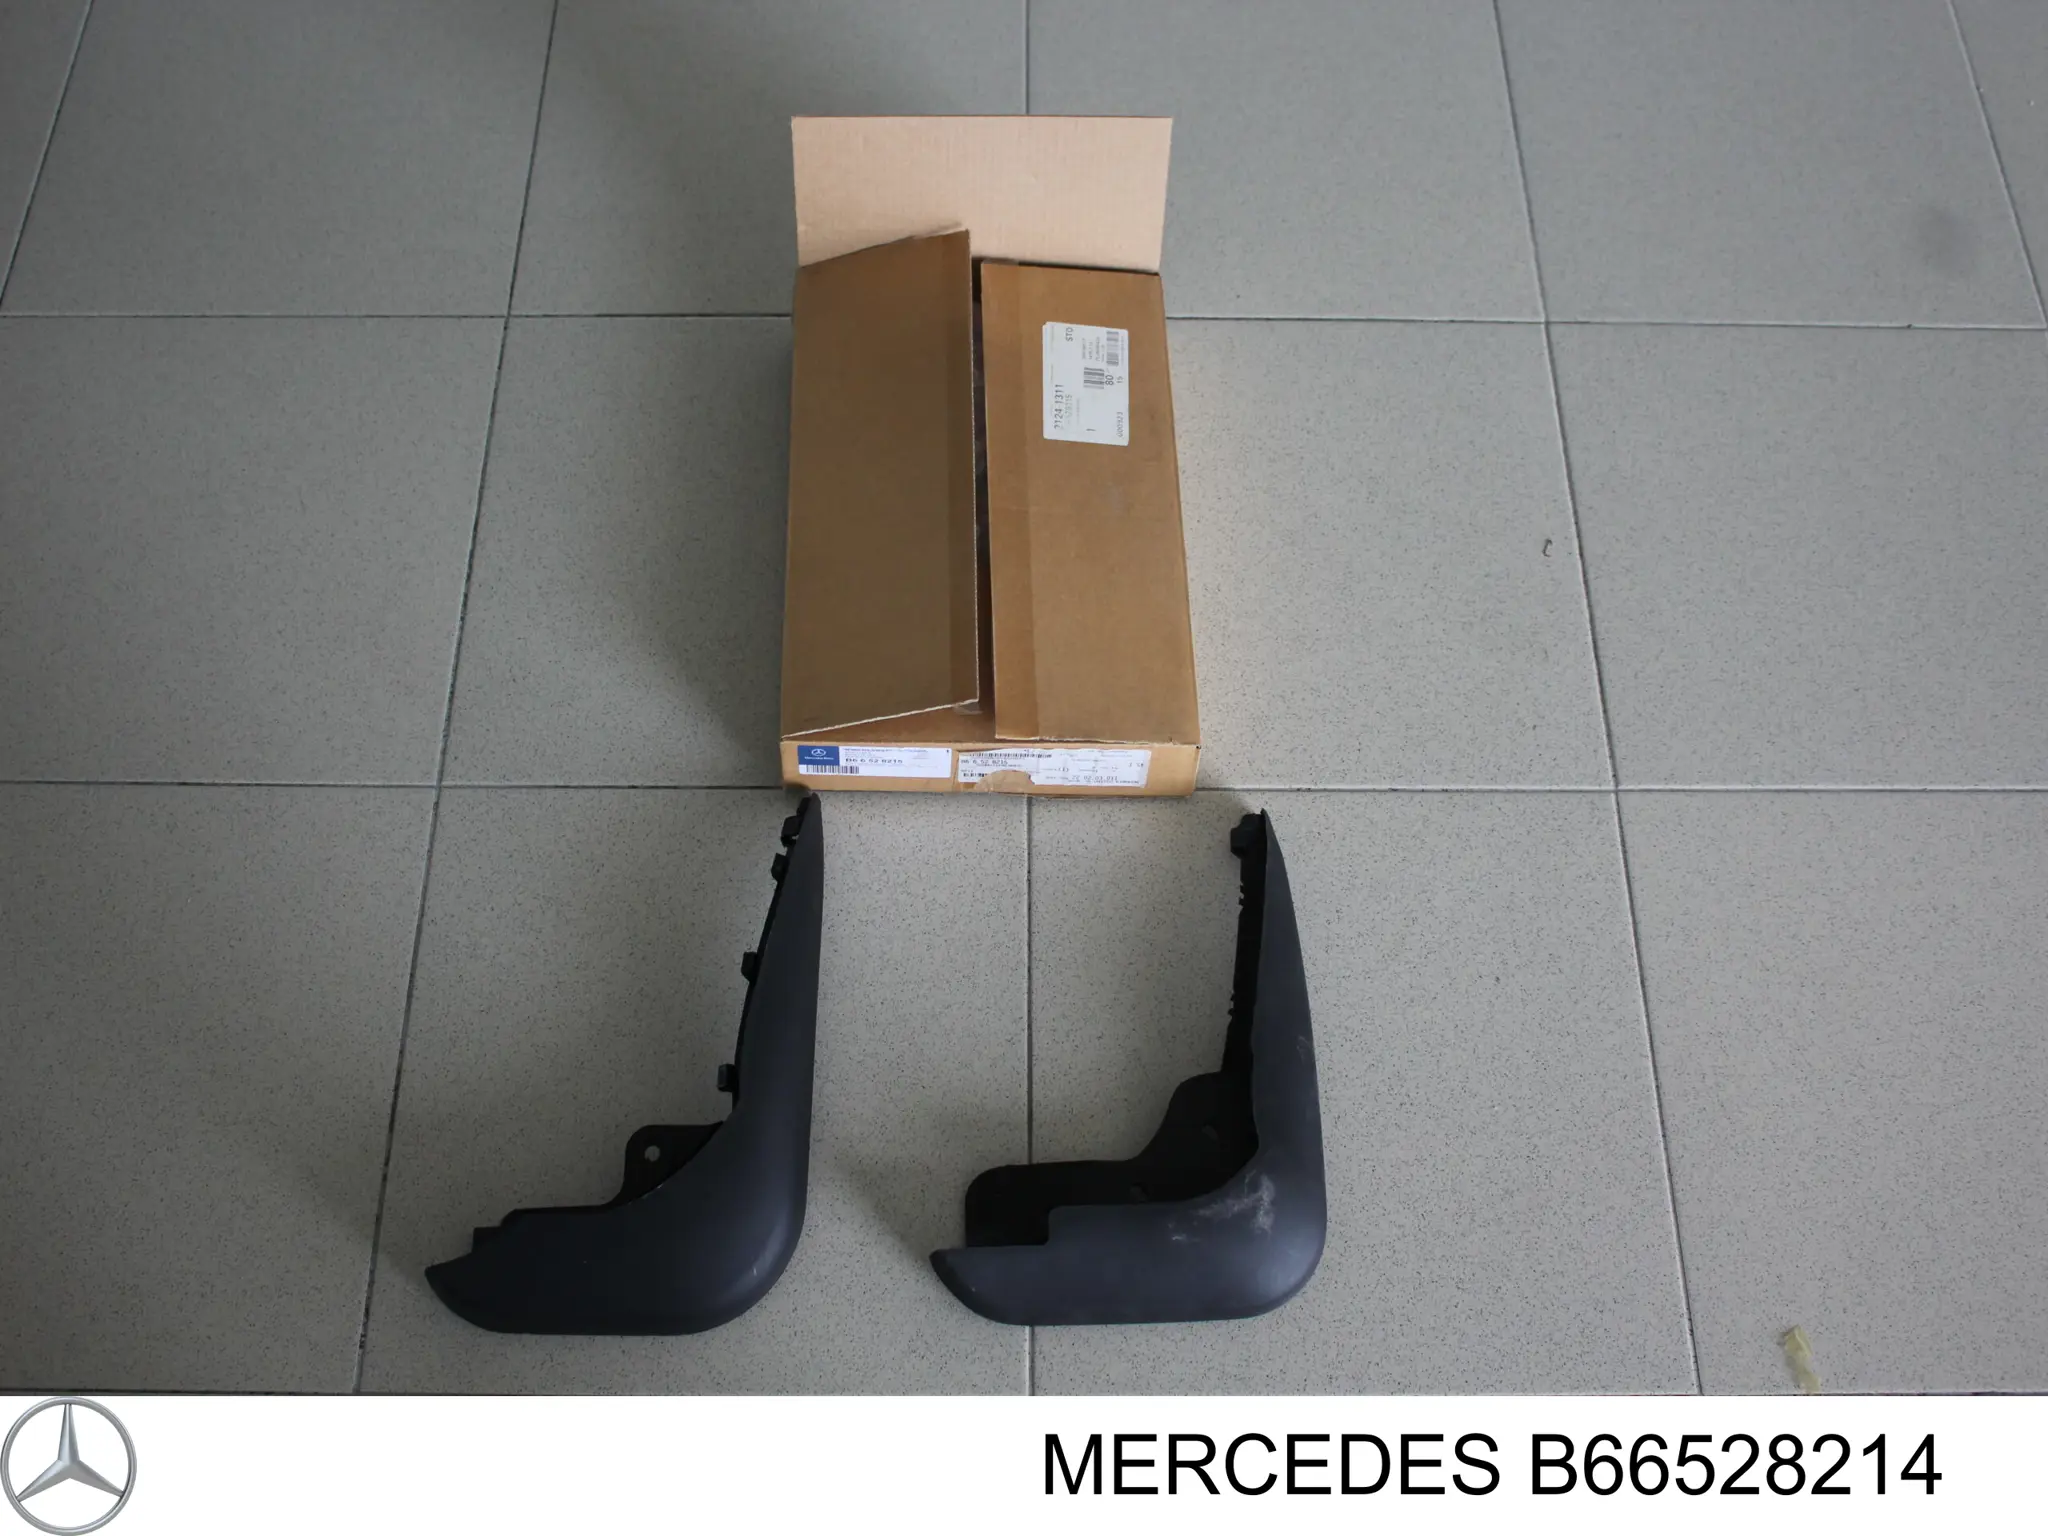 B66528214 Mercedes juego de faldillas guardabarro delanteros